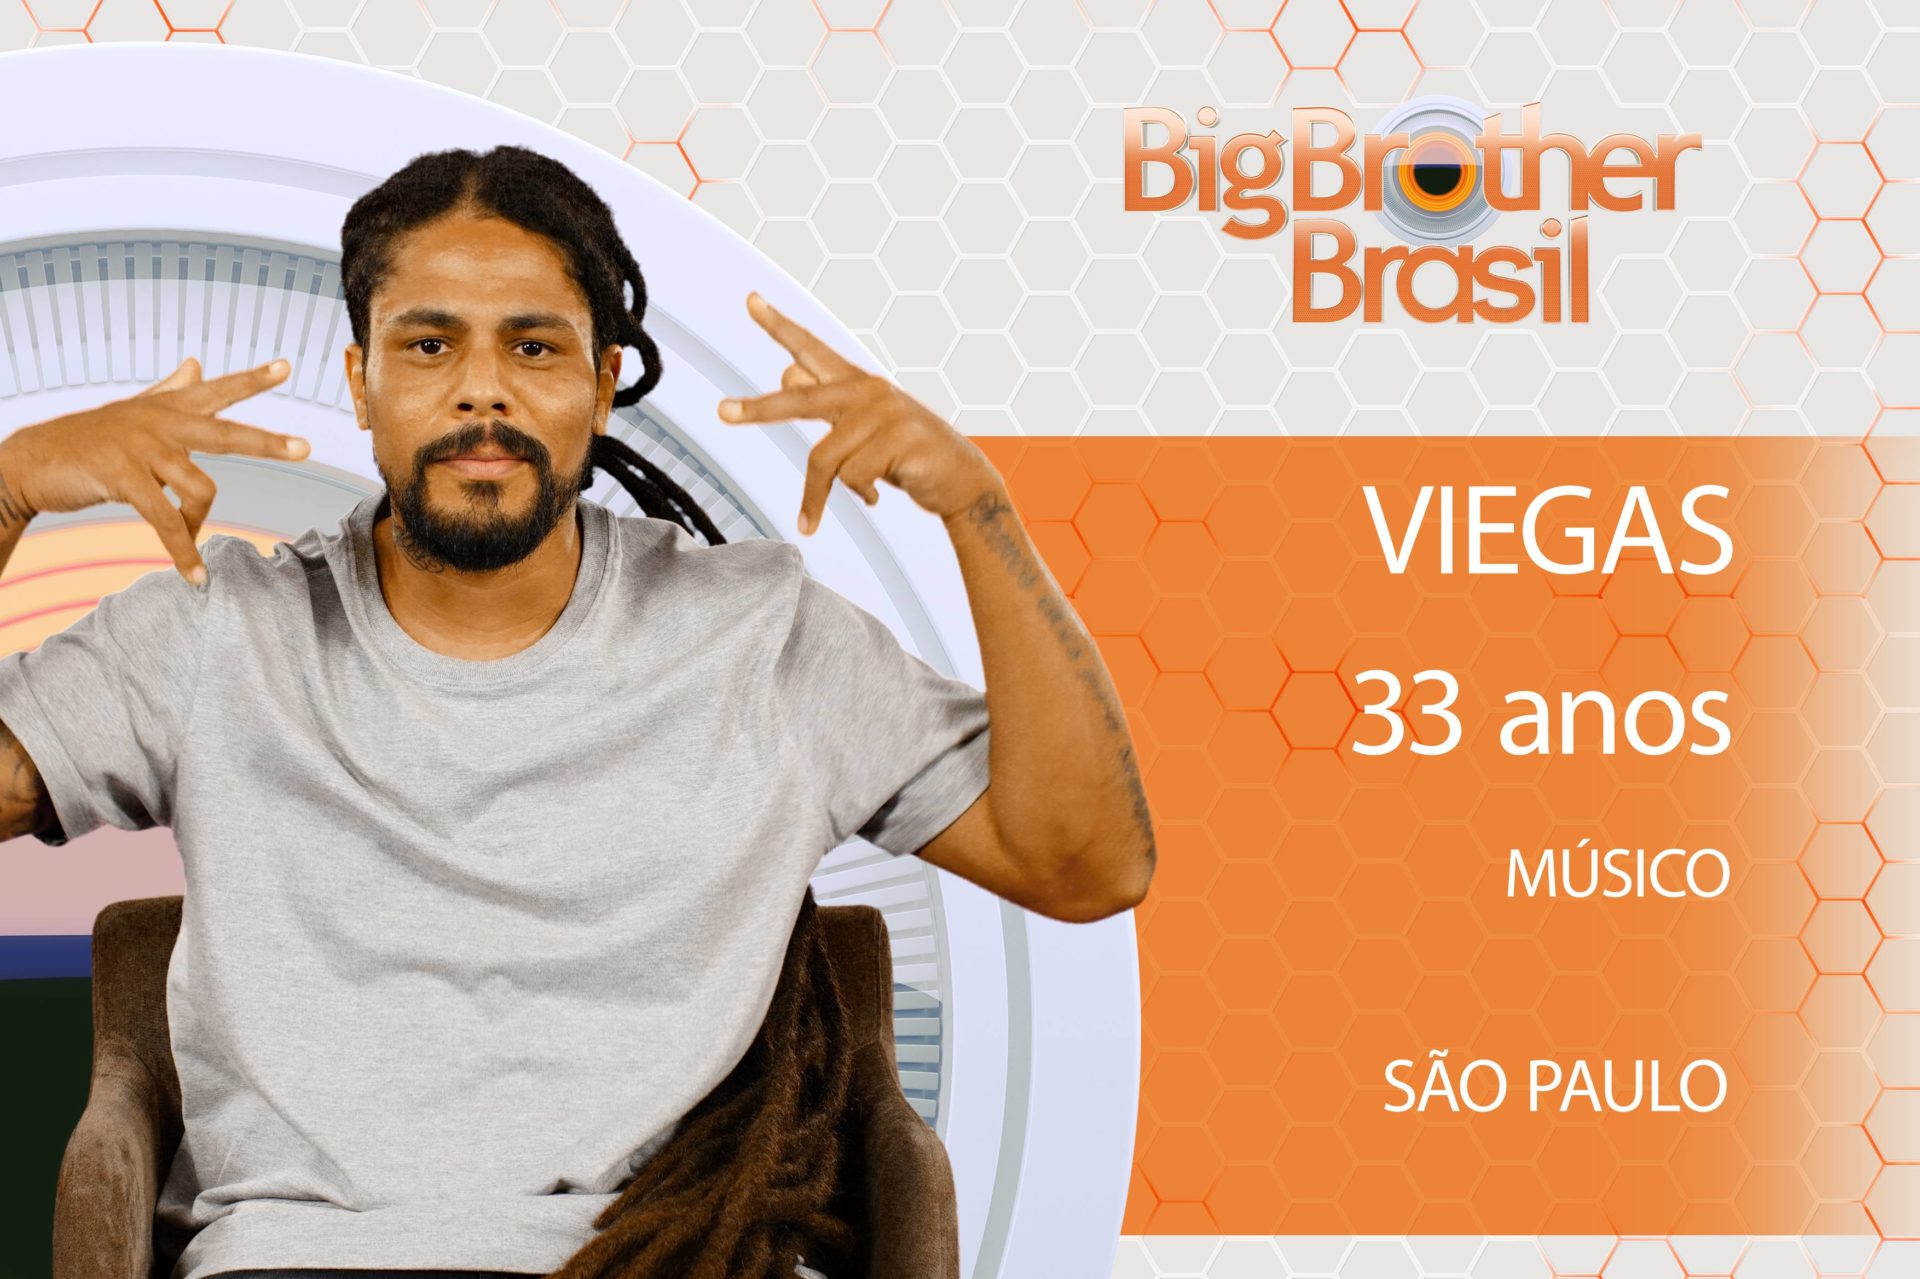 Viegas mora em São Paulo e tem 33 anos (Divulgação)